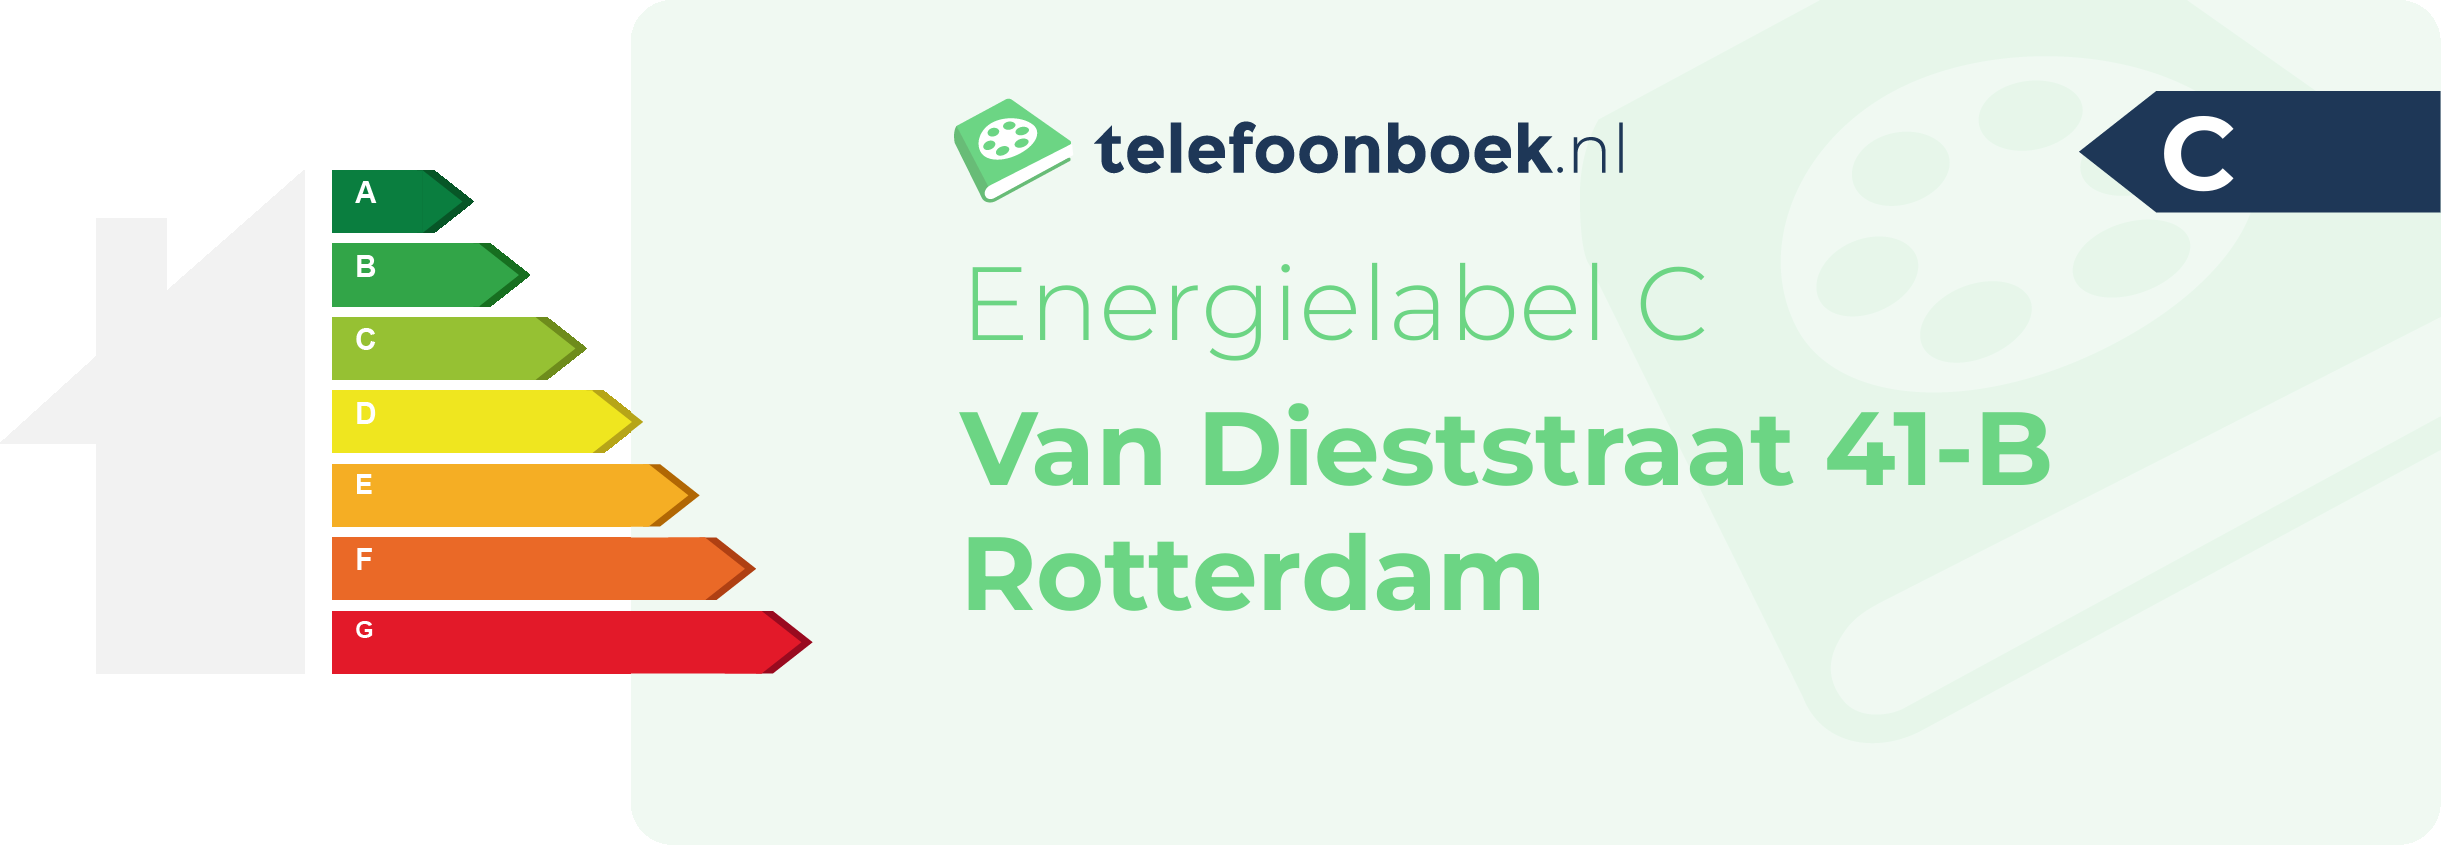 Energielabel Van Dieststraat 41-B Rotterdam